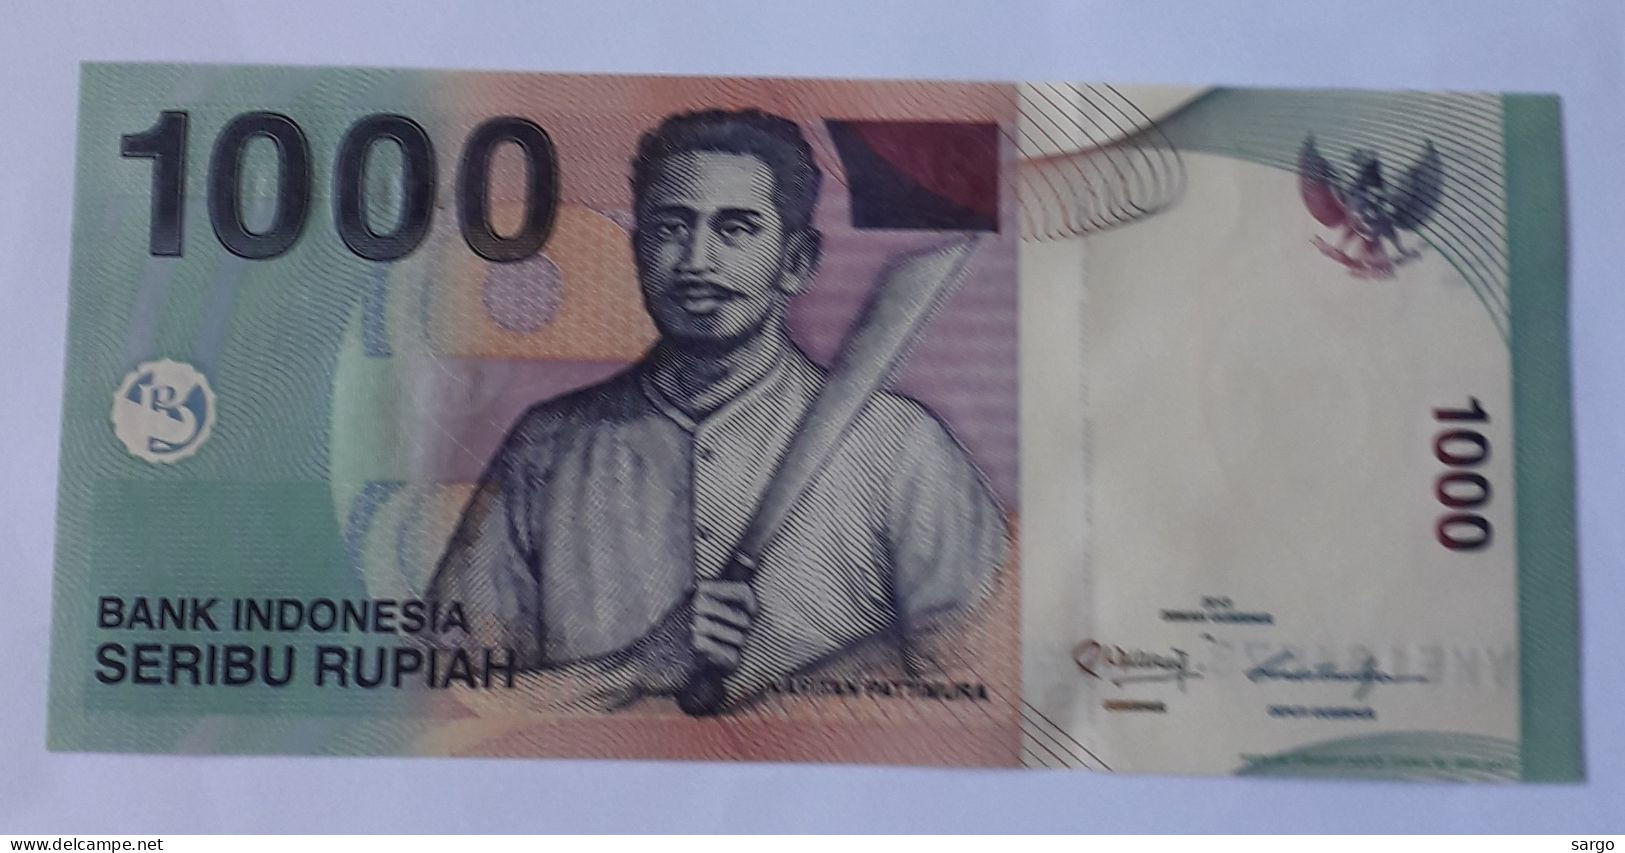 INDONESIA - 1.000 RUPIAH - P 141 - 2013 - UNC - BANKNOTES - PAPER MONEY - CARTAMONETA - - Indonesien